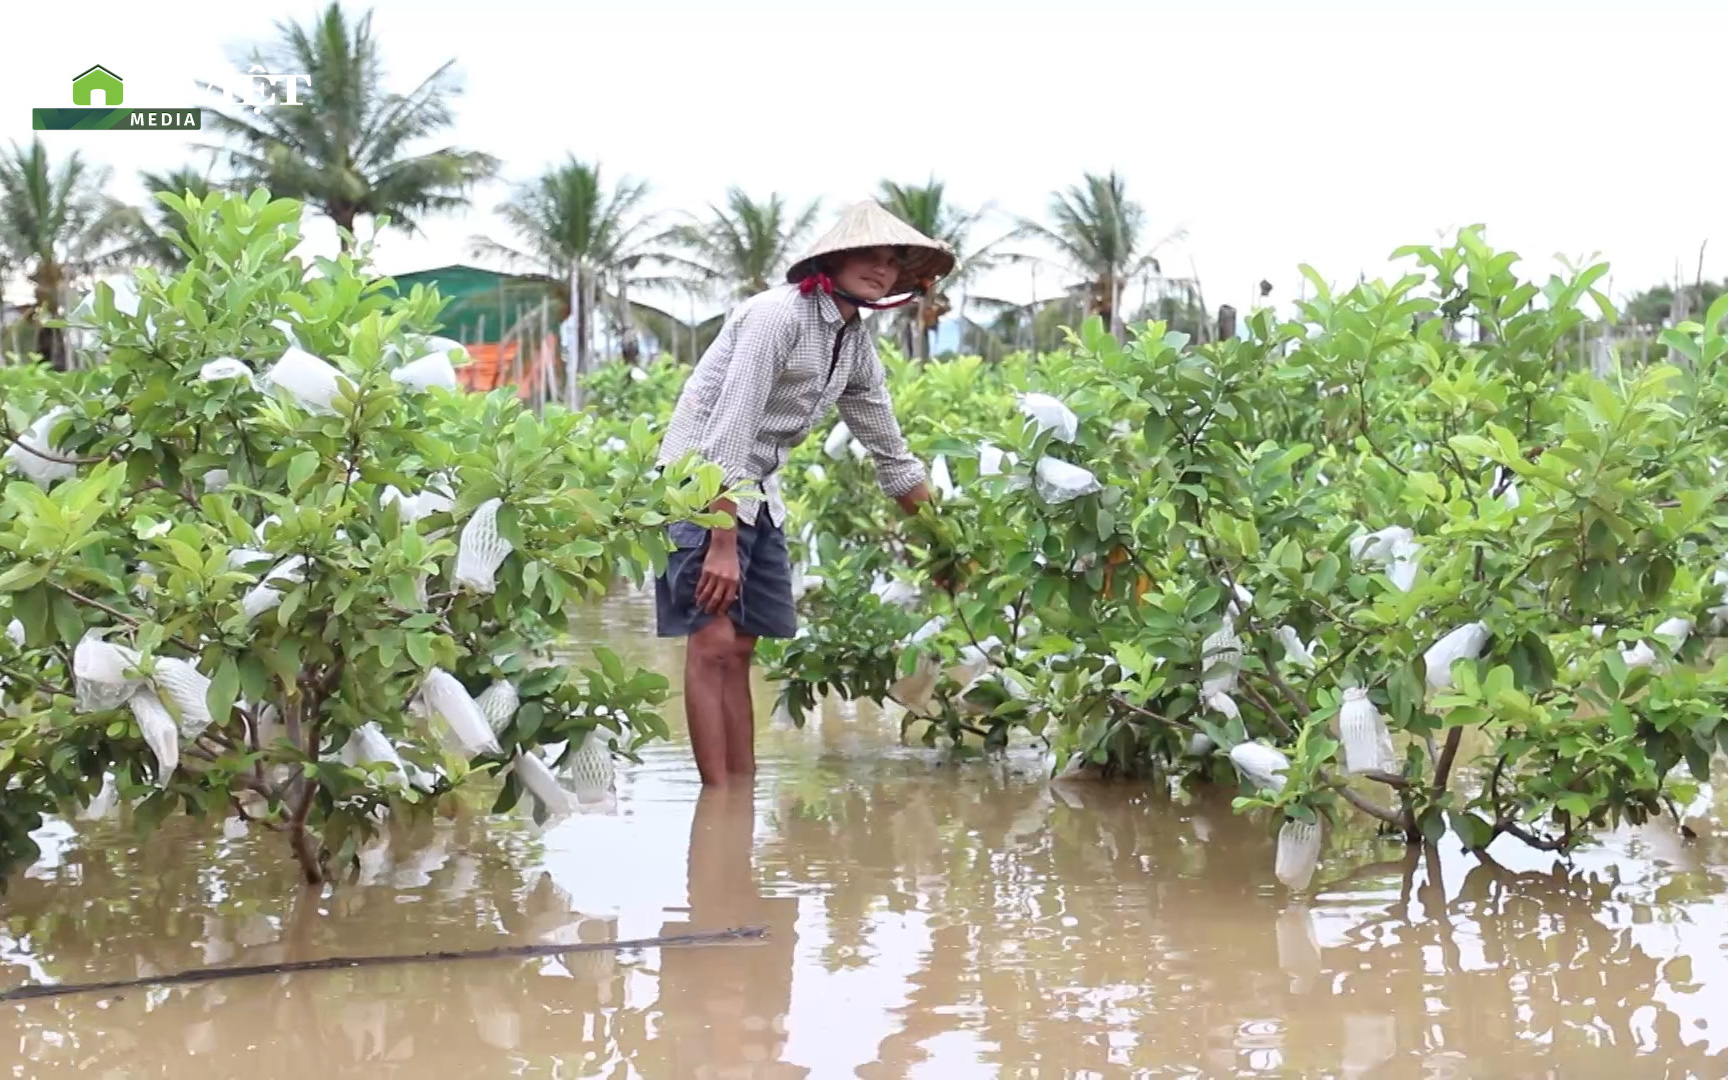 Clip: Nông dân Ninh Thuận lội nước hái táo vì mưa lớn kéo dài khiến hàng chục ha cây trồng ngập nặng